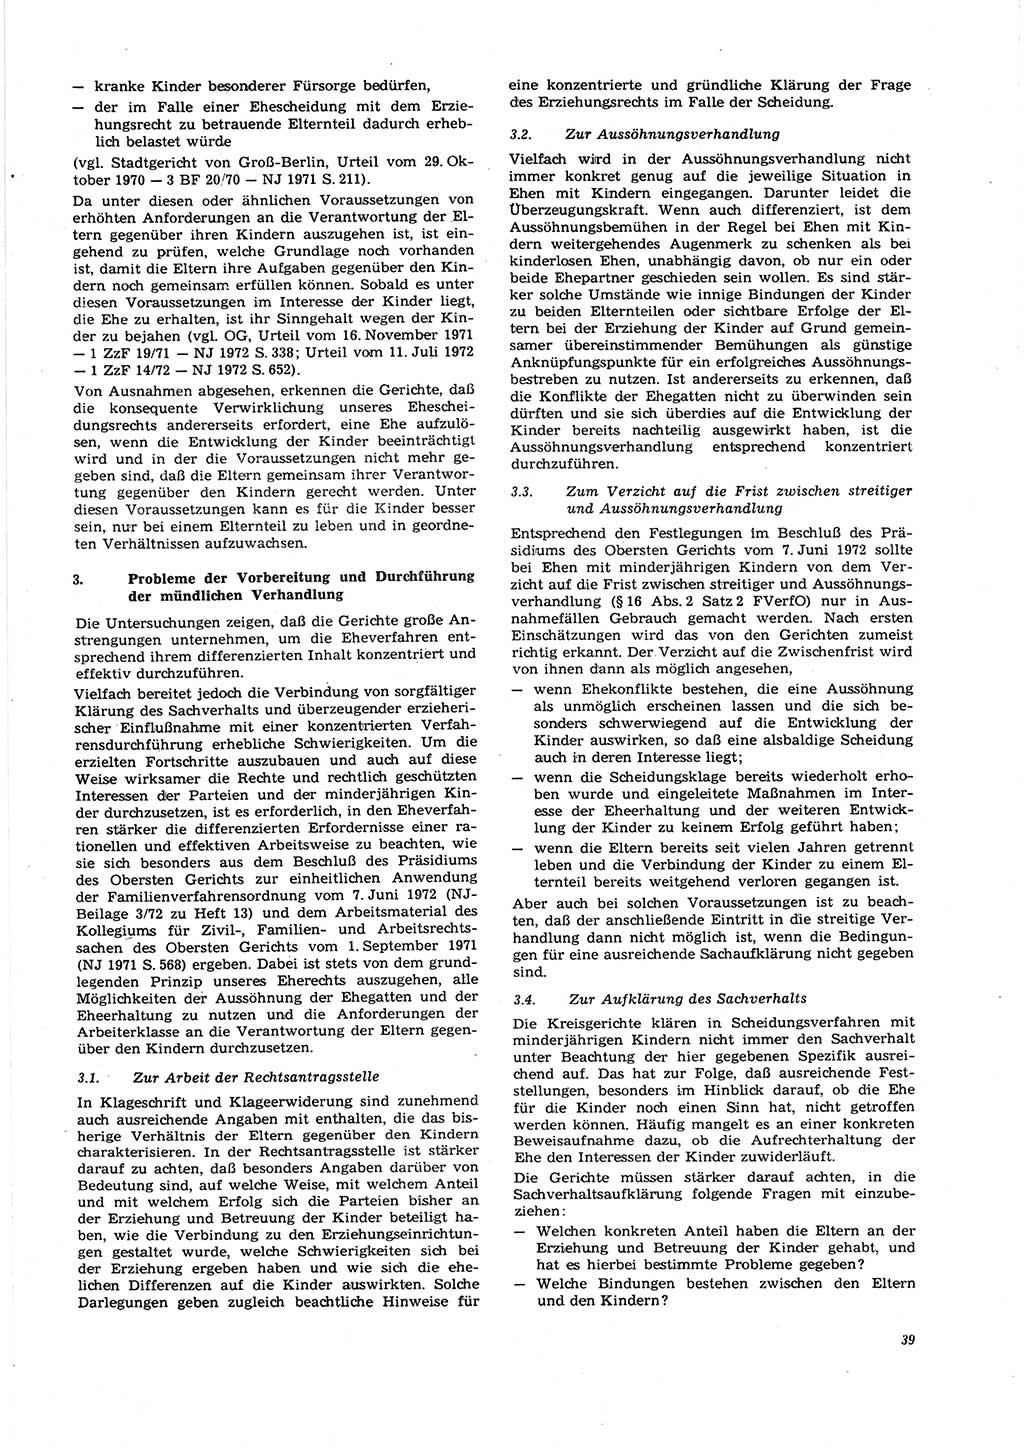 Neue Justiz (NJ), Zeitschrift für Recht und Rechtswissenschaft [Deutsche Demokratische Republik (DDR)], 27. Jahrgang 1973, Seite 39 (NJ DDR 1973, S. 39)